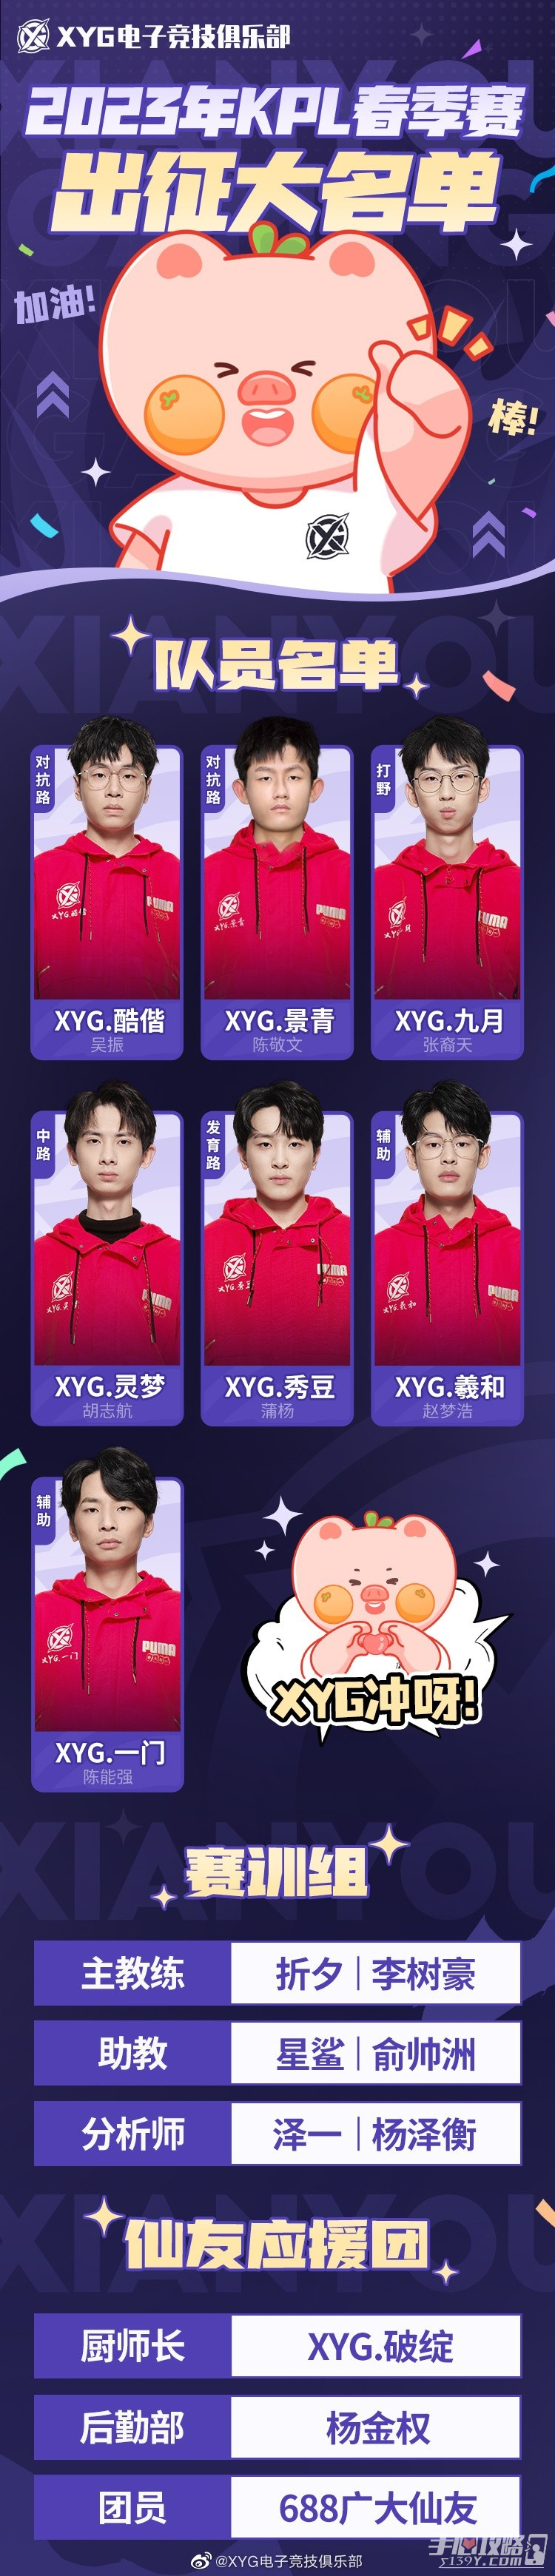 《王者荣耀》2023KPL春季赛XYG战队选手大名单